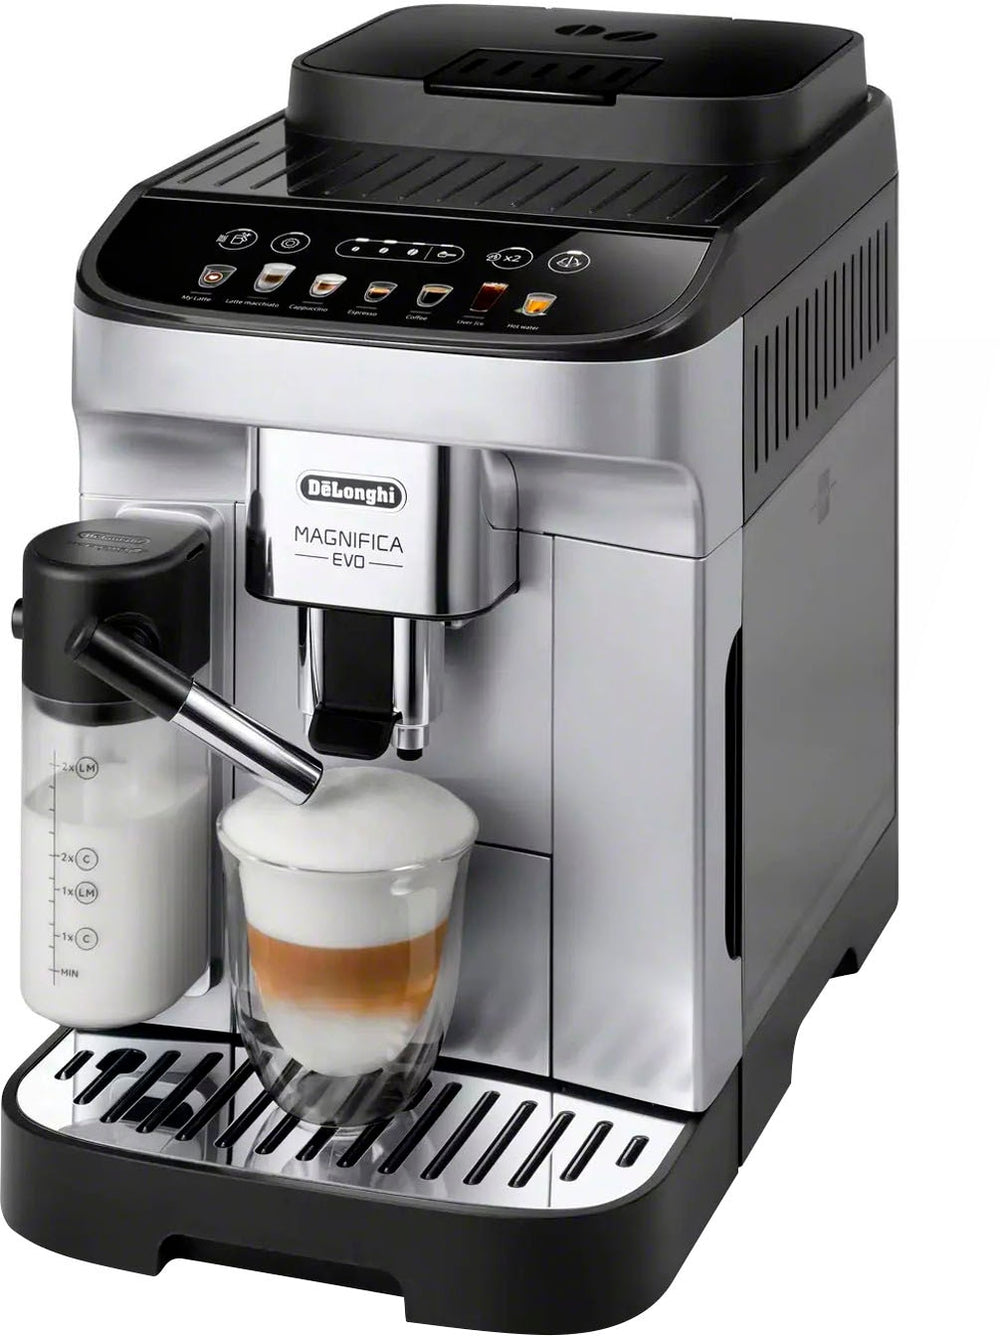 De'Longhi - Magnifica Evo Coffee and Espresso Machine - Silver_1